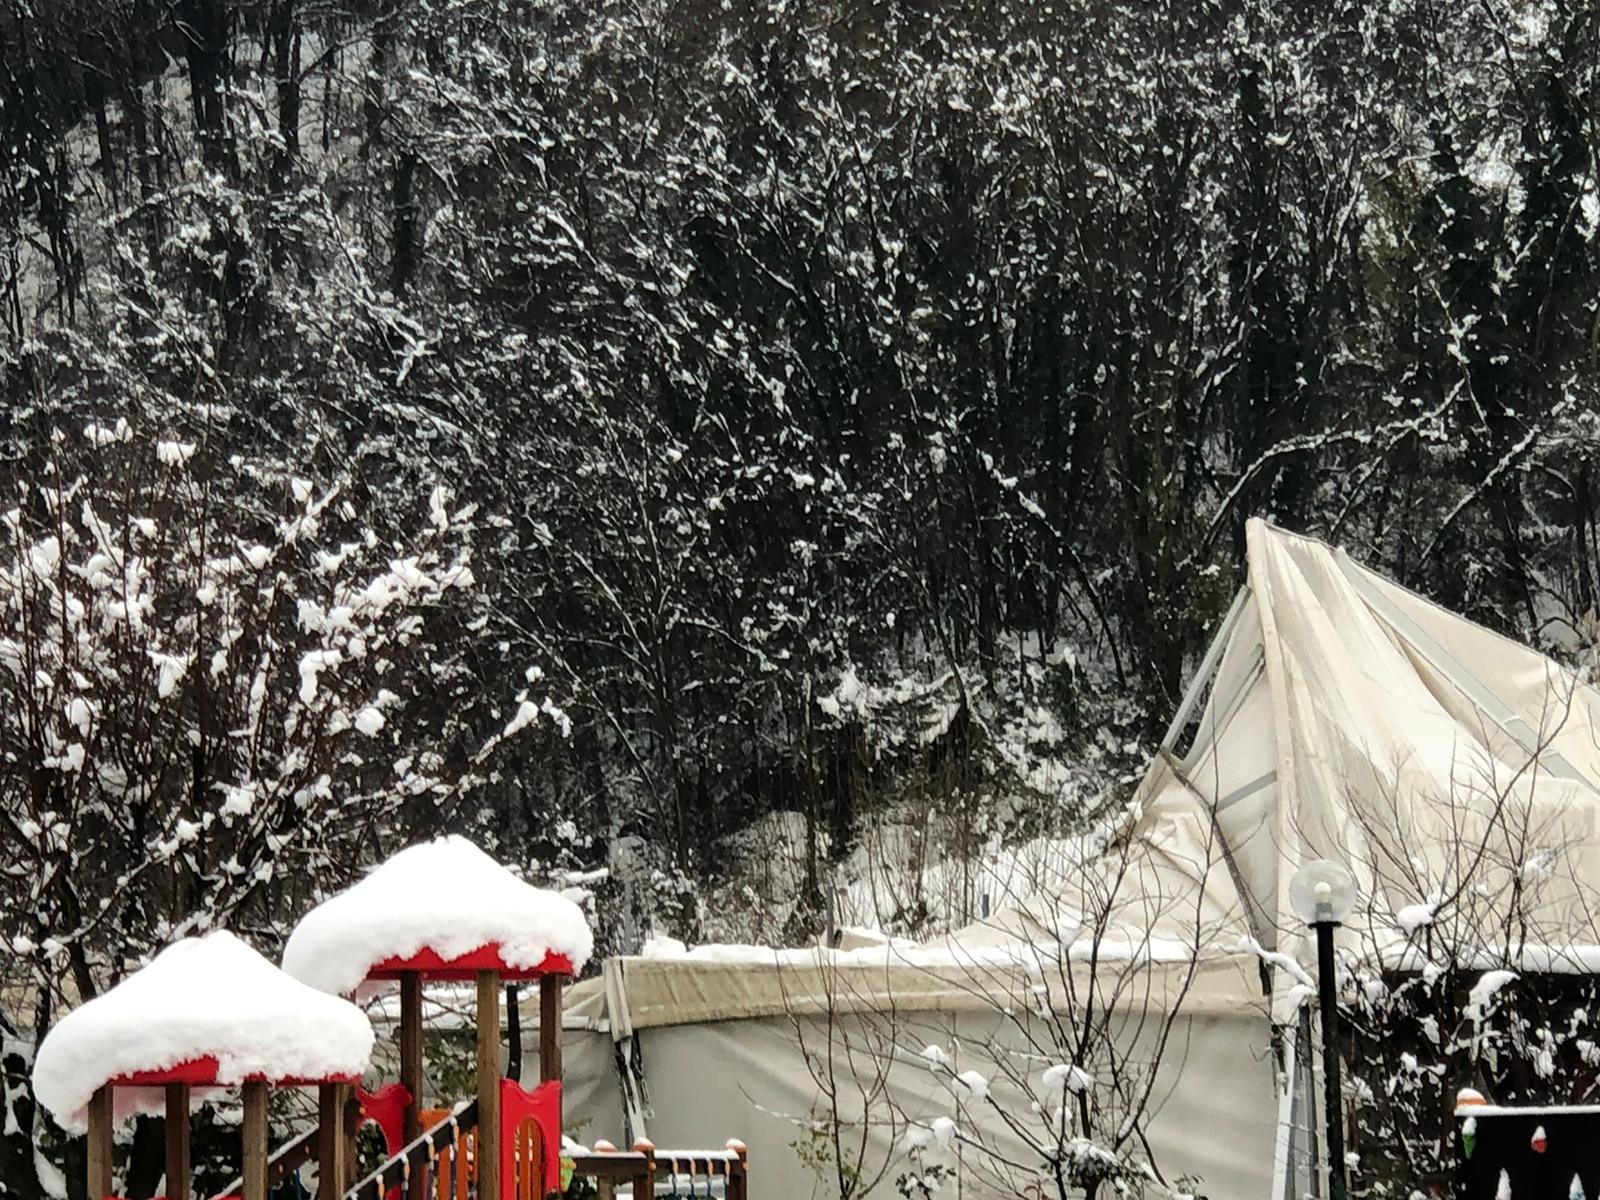 Palazzetto di Monleale distrutto dalla neve: lo Sportleale avvia una raccolta fondi